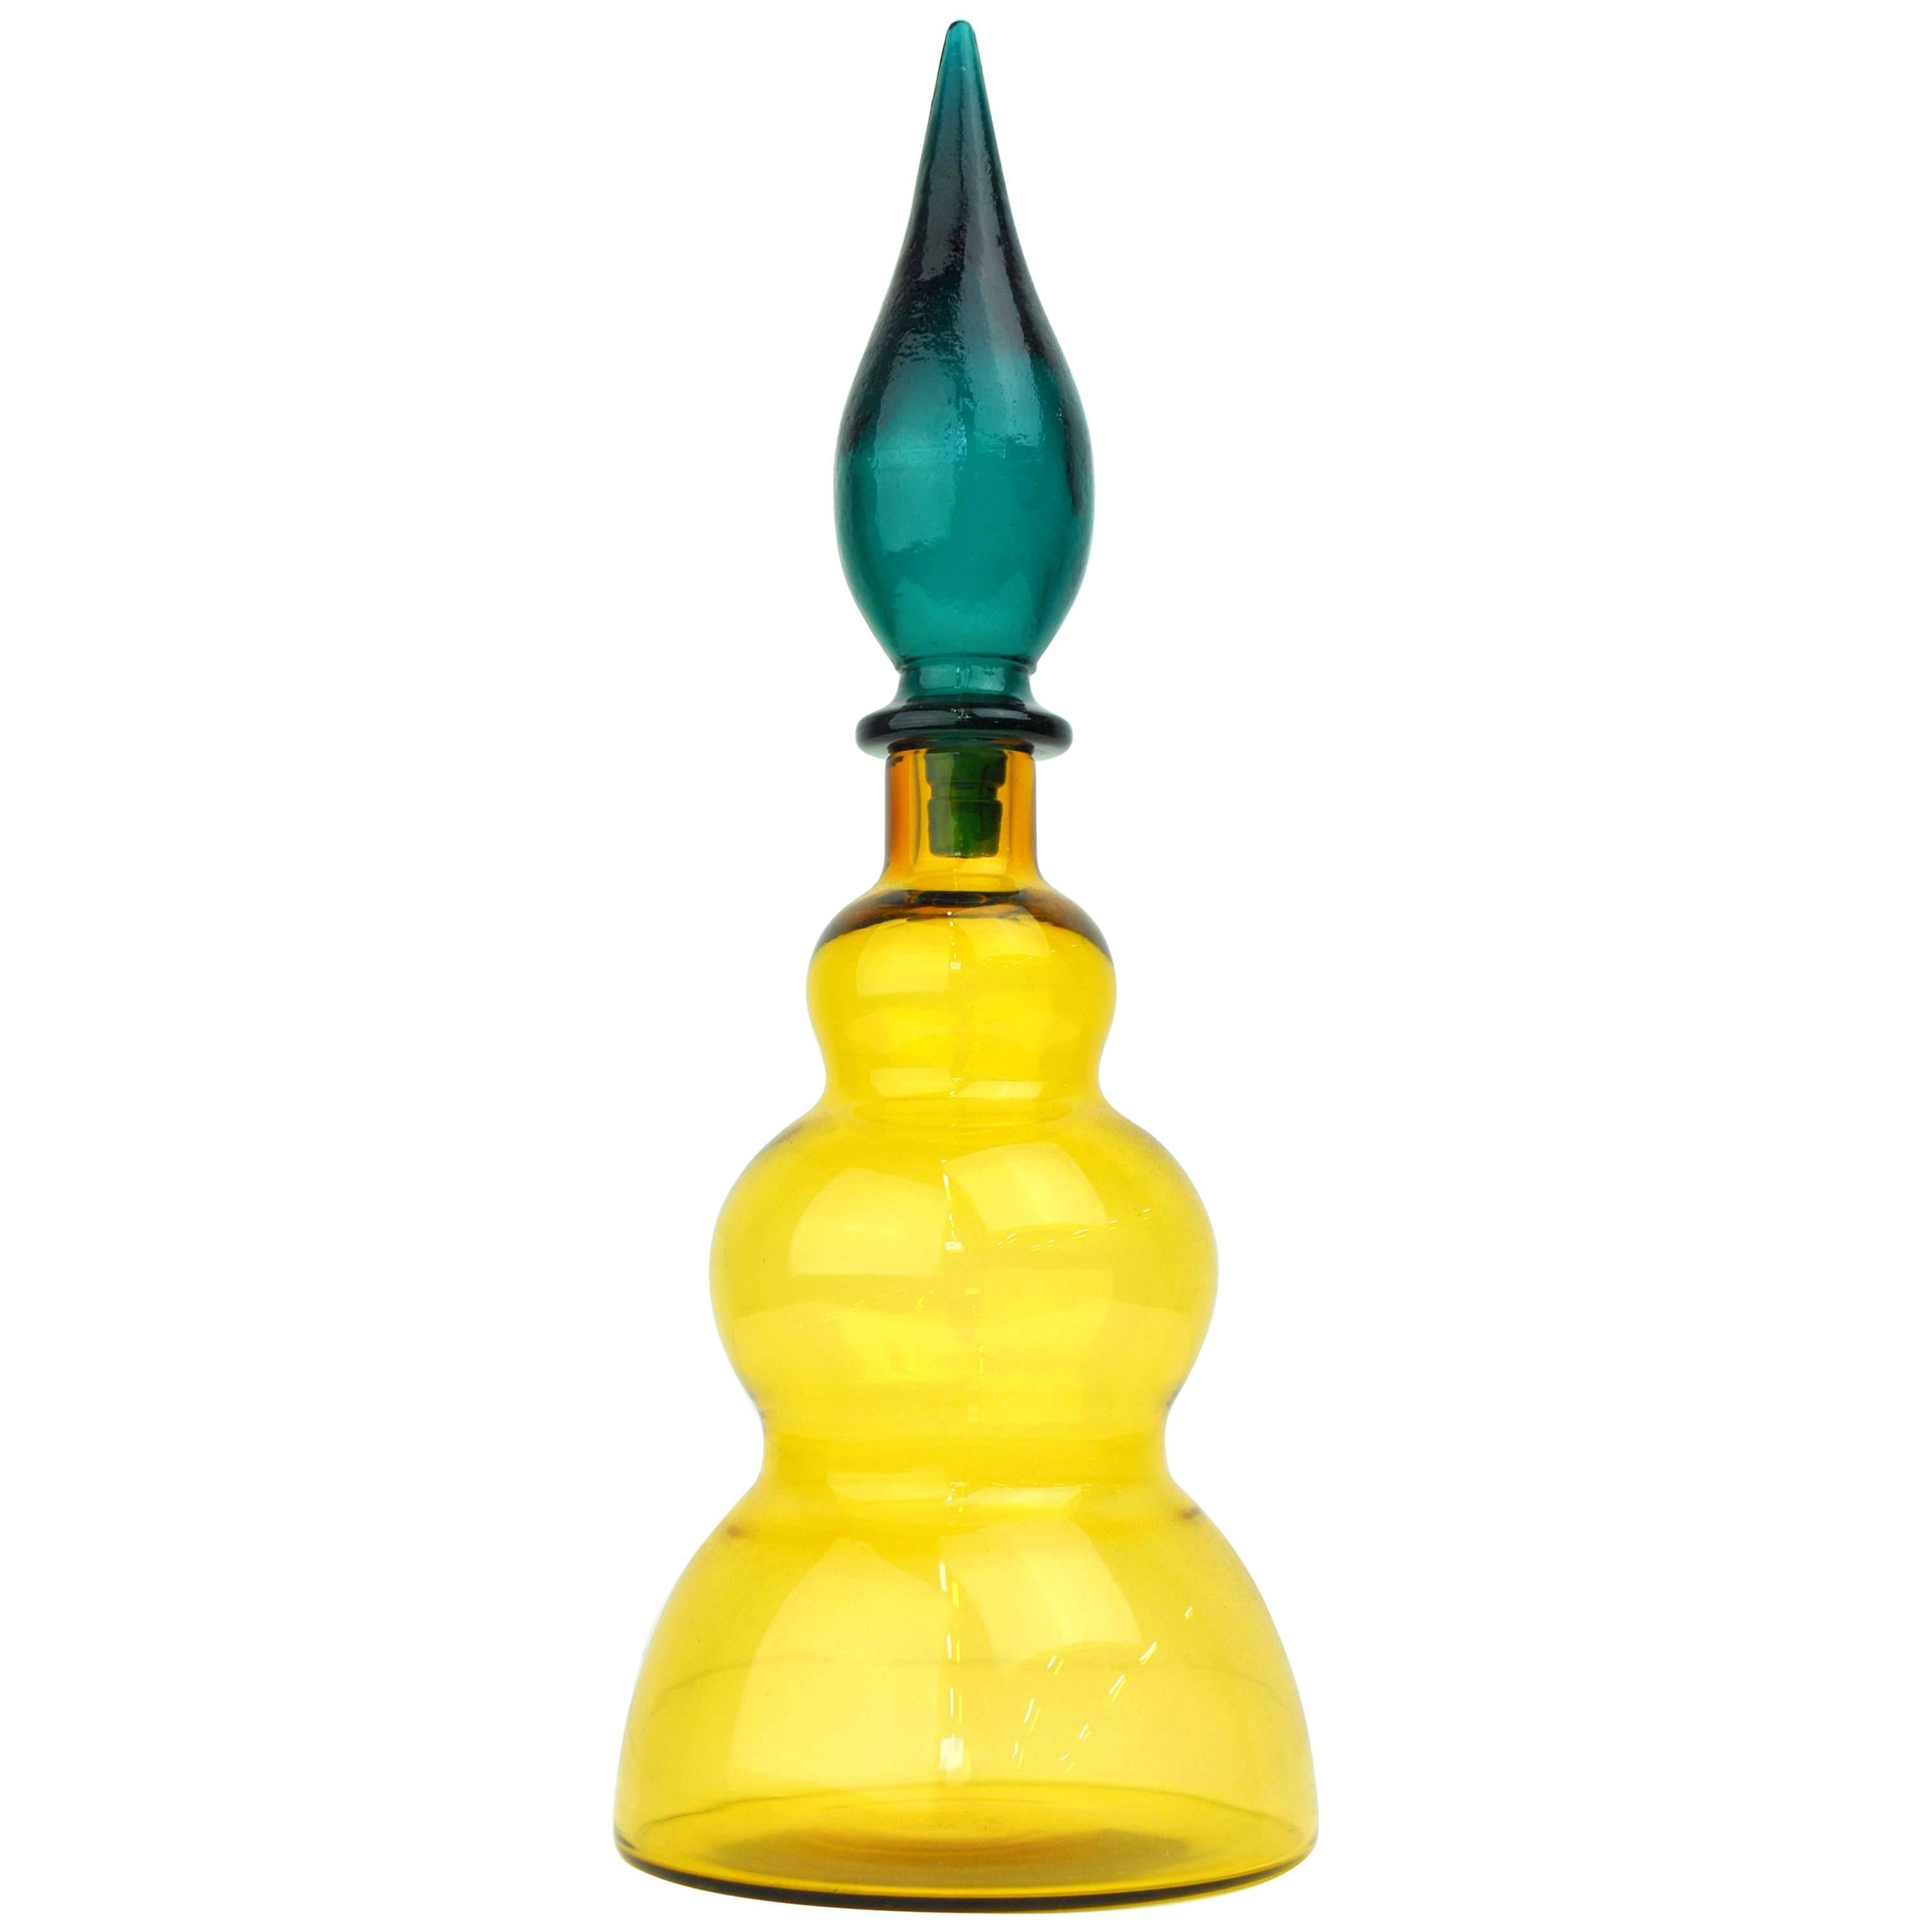 Salviati Murano Glass Amber Yellow and Emerald Green Decanter